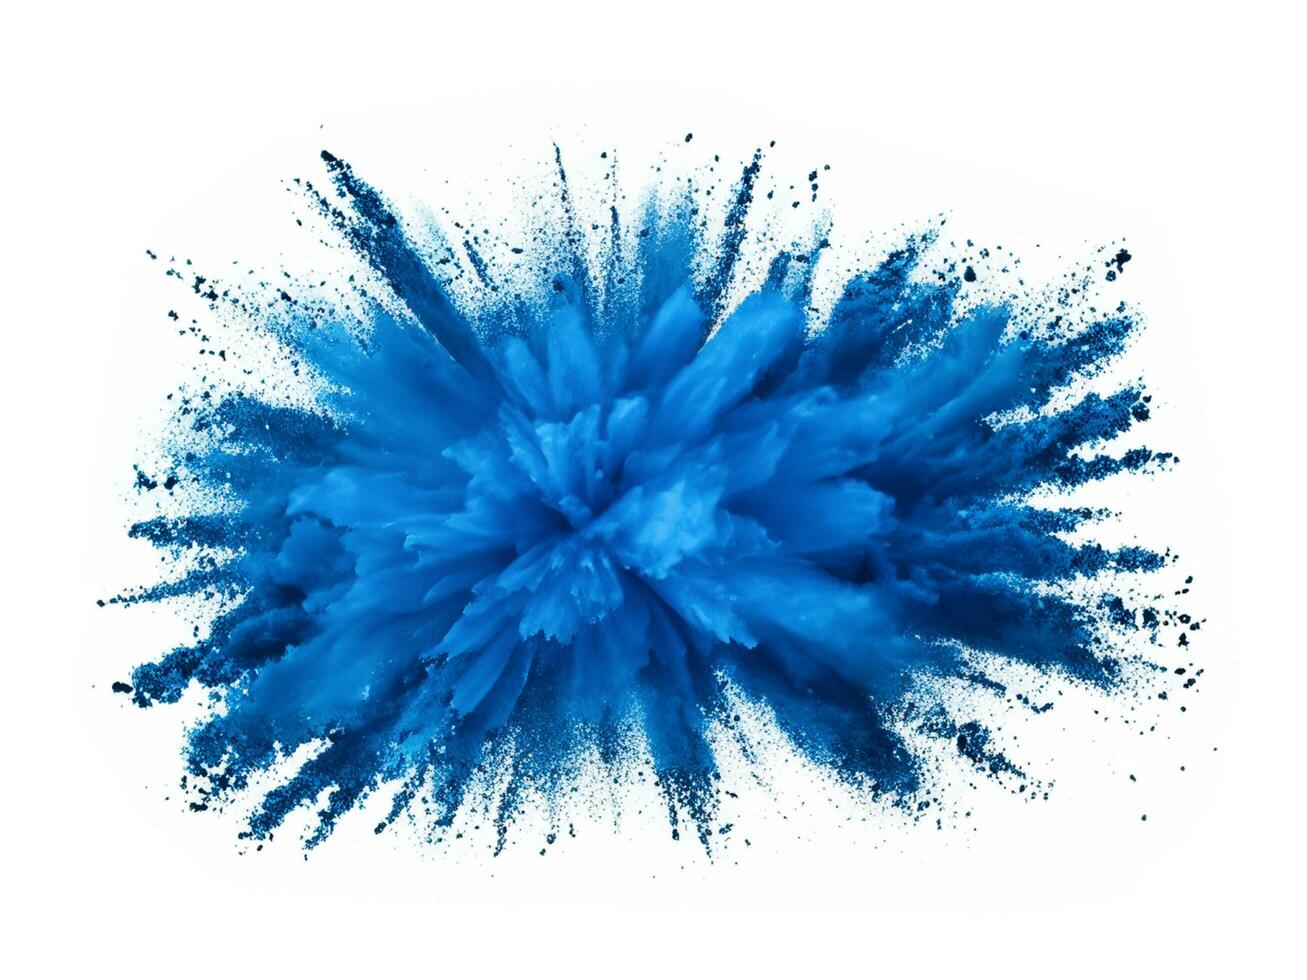 azul explosão do pó em uma branco fundo foto